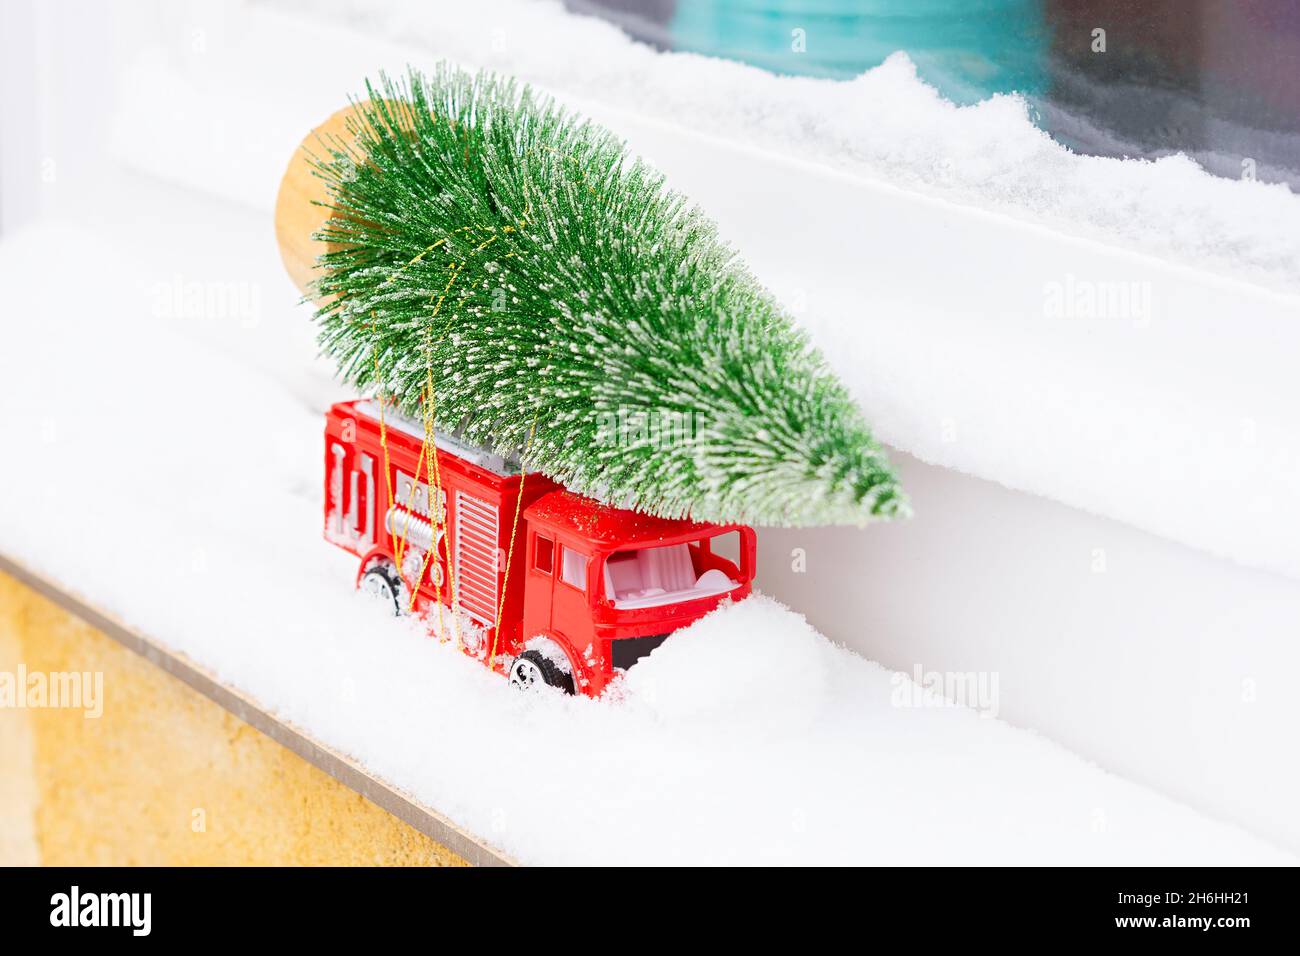 Auto Weihnachtsbaum Schnee. Lieferung von Spielzeug, Neujahrsstimmung, Geschenke auf einem roten Mini-Kinderwagen im Schnee. Das Konzept von Neujahr, Weihnachten, h Stockfoto